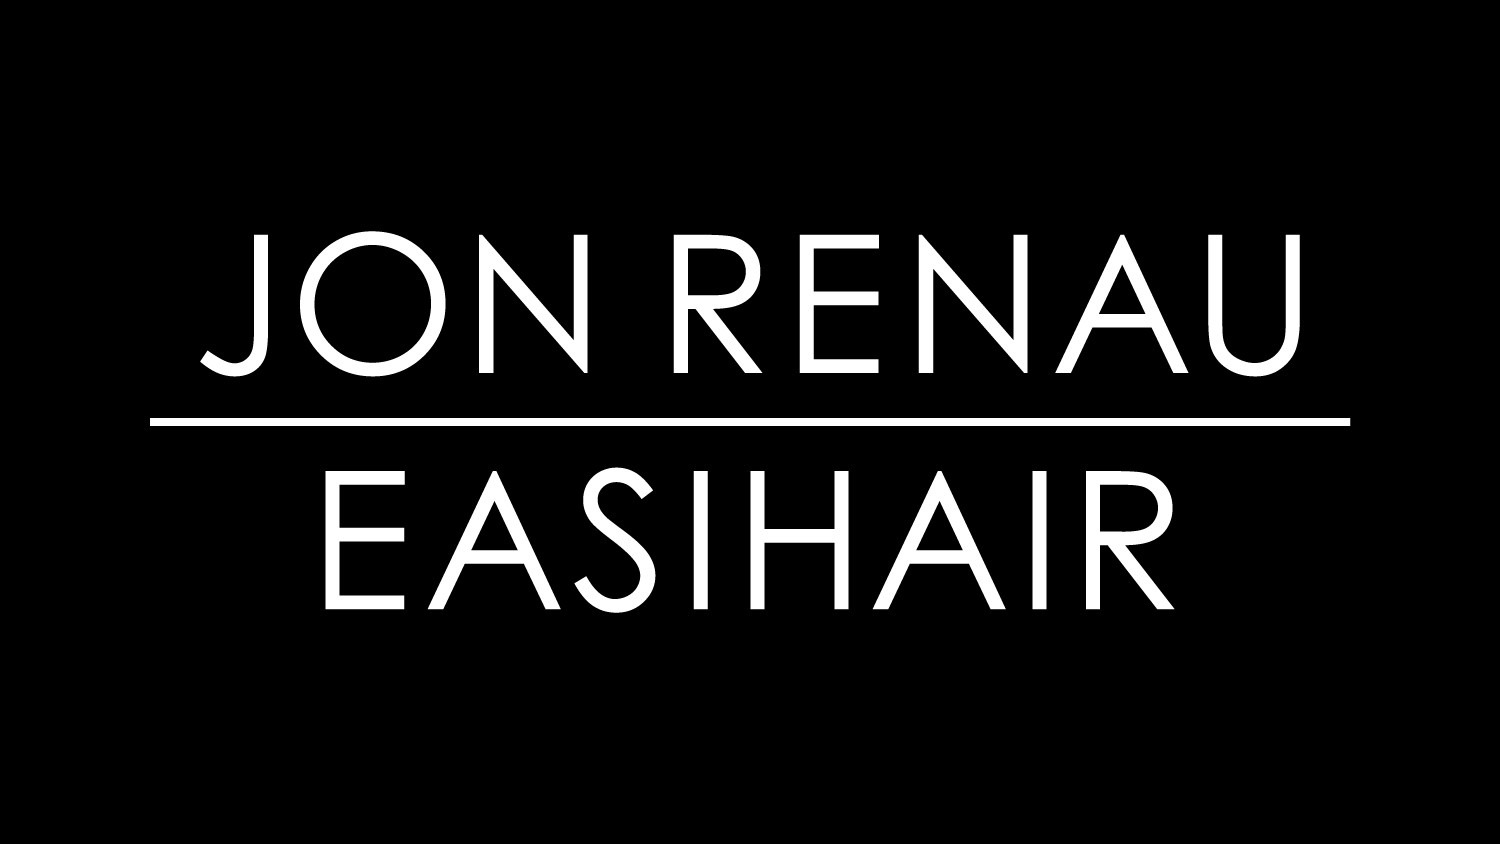 Stacked Jon Renau Easihair Logo in black and white